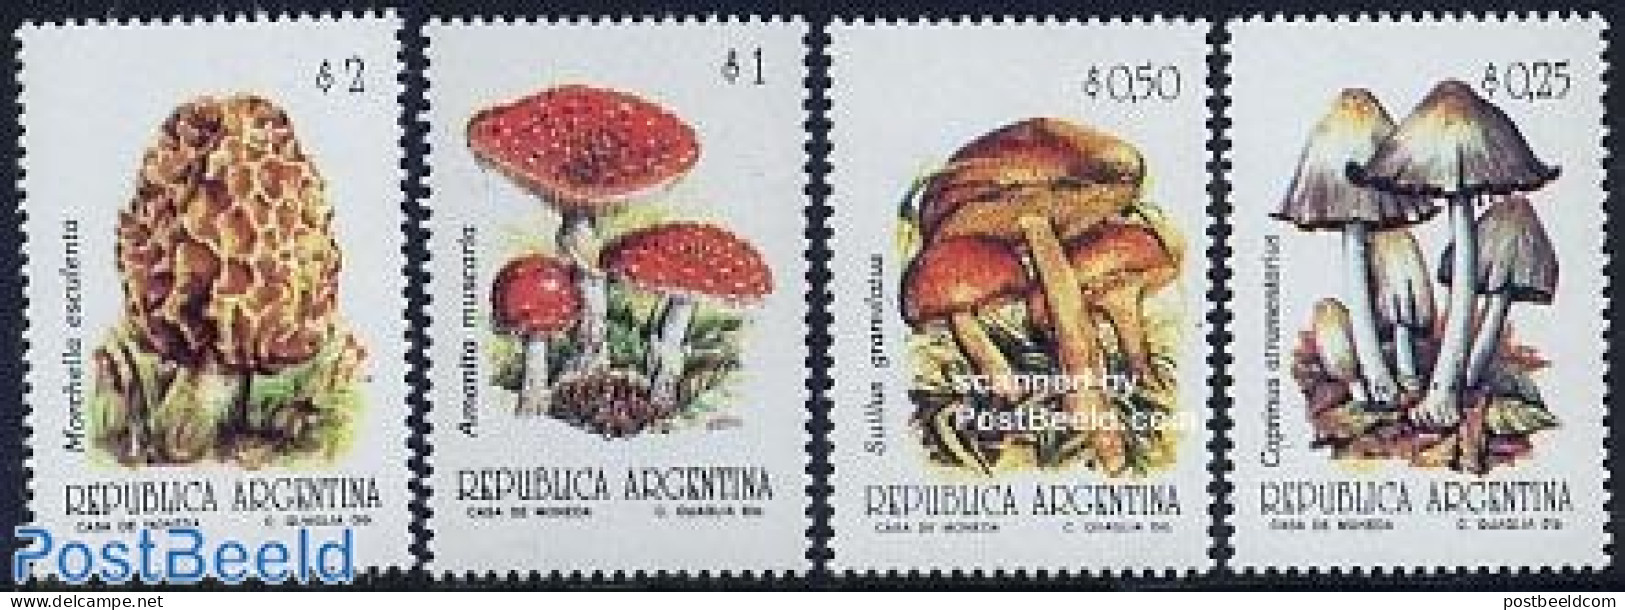 Argentina 1993 Definitives, Mushrooms 4v, Mint NH, Nature - Mushrooms - Ungebraucht